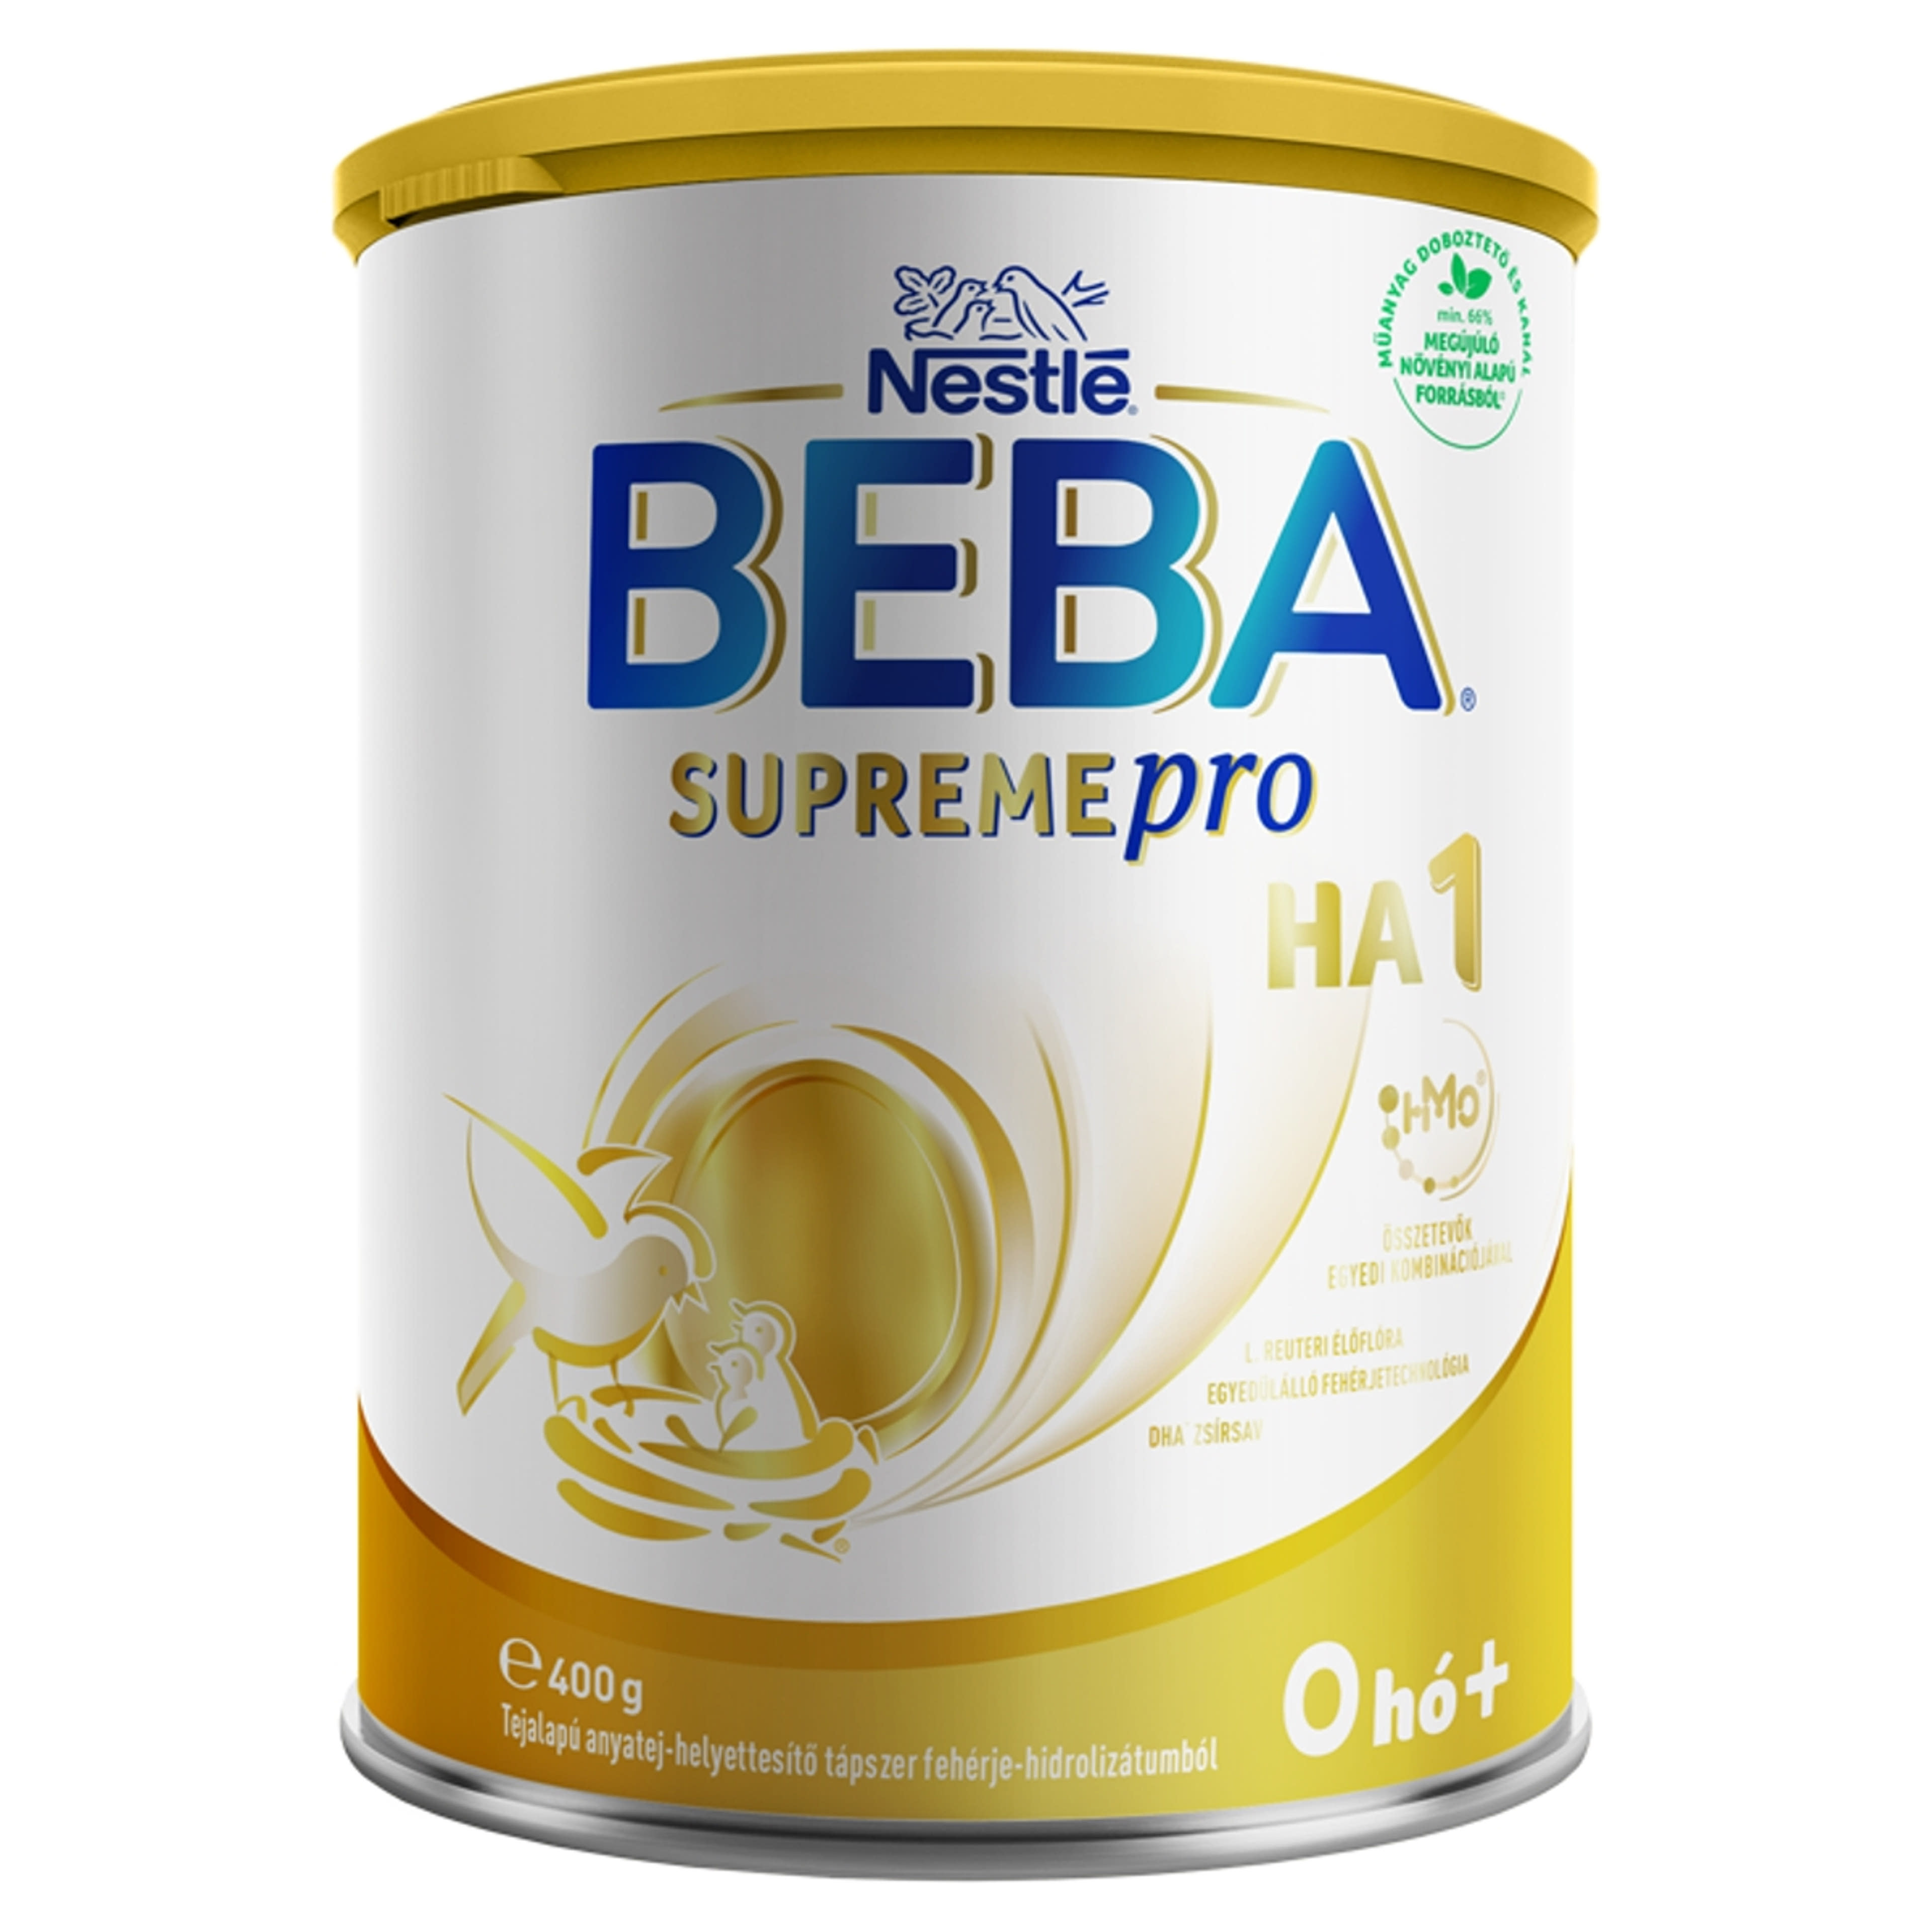 Beba SupremePro HA1 tejalapú anyatej-helyettesítő tápszer fehérje-hidrolizátumból 0 hónapos kortól - 400 g-1